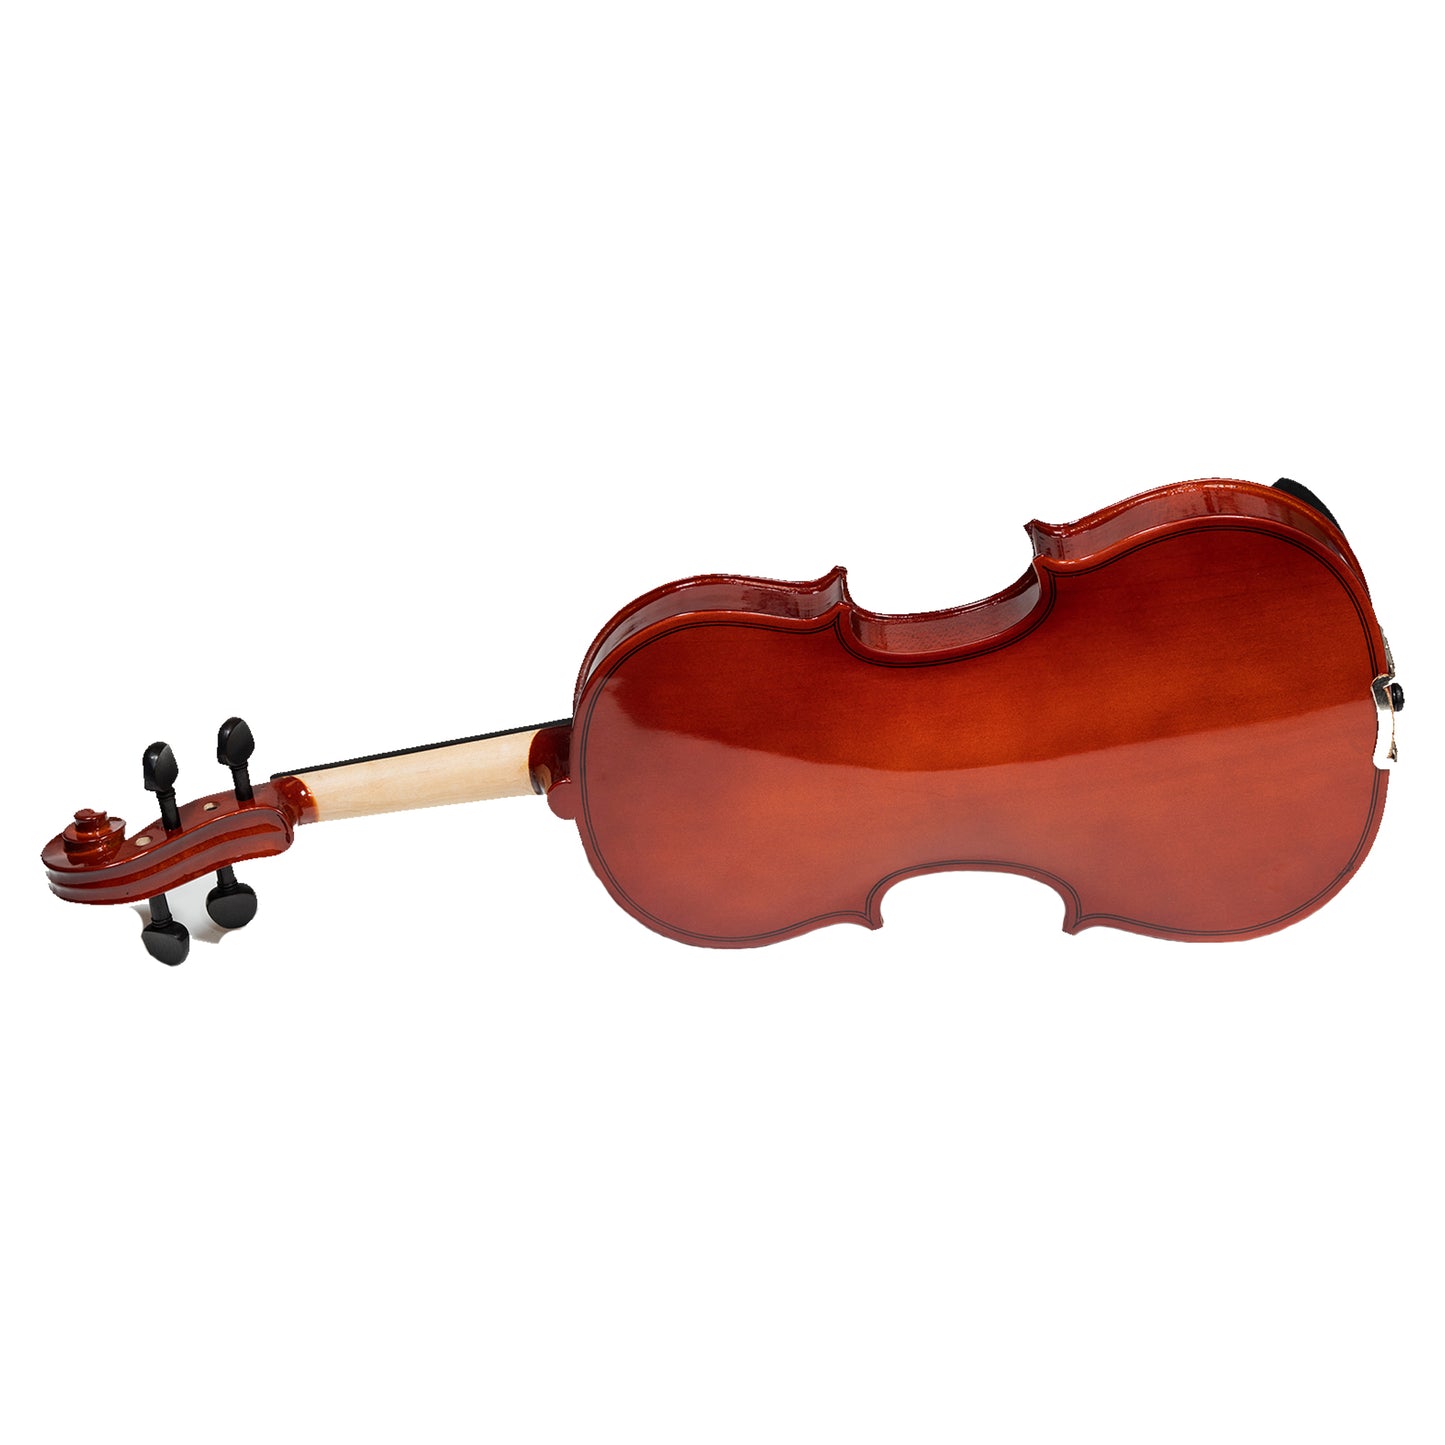 Heartland 1-8 Laminated Student Violin